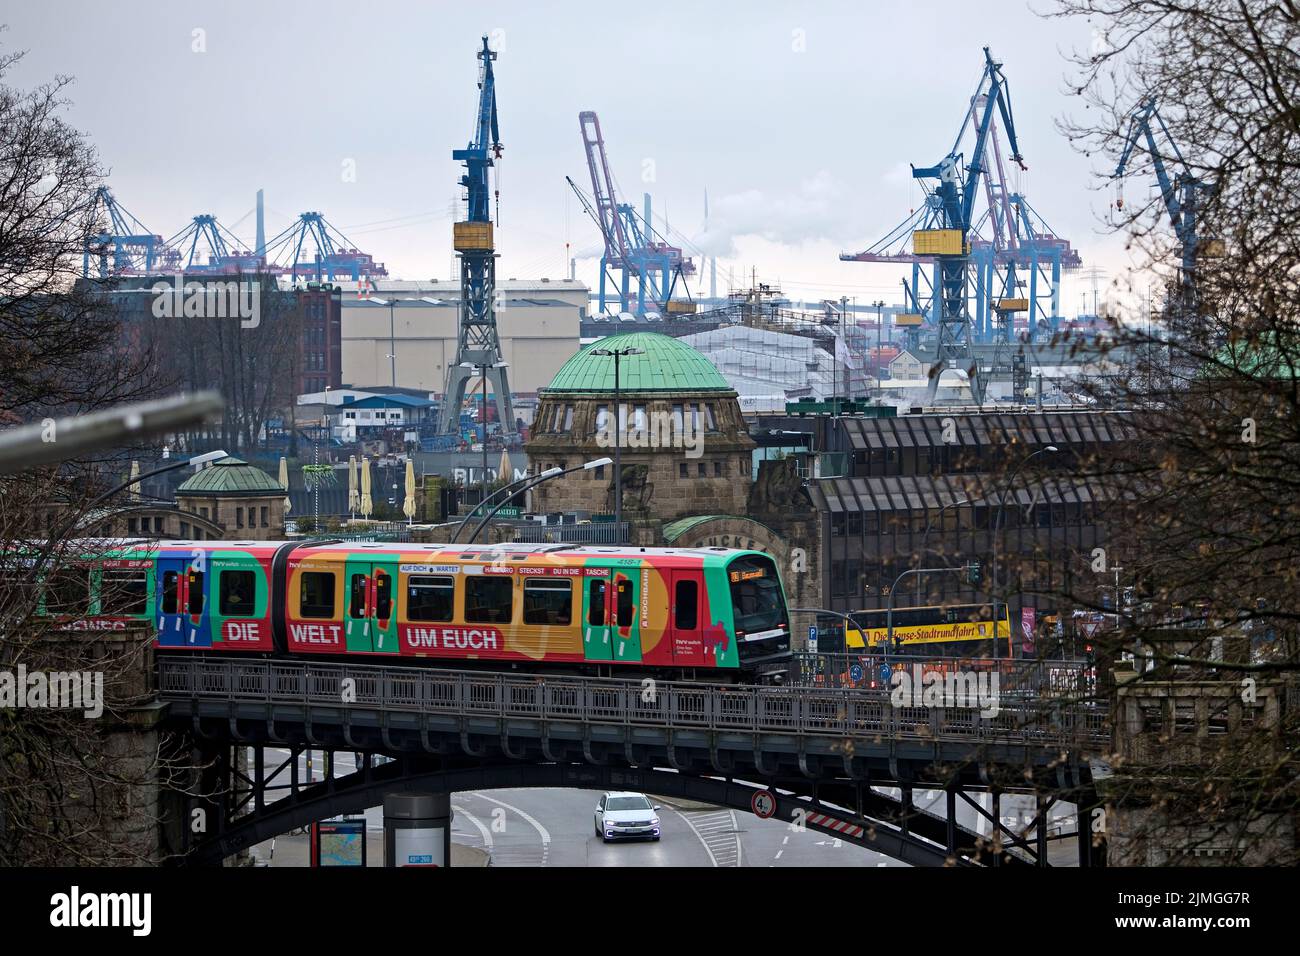 Ferrocarril elevado, Landungsbruecke 4 y grúas en el puerto, St. Pauli, Hamburgo, Alemania, Europa Foto de stock